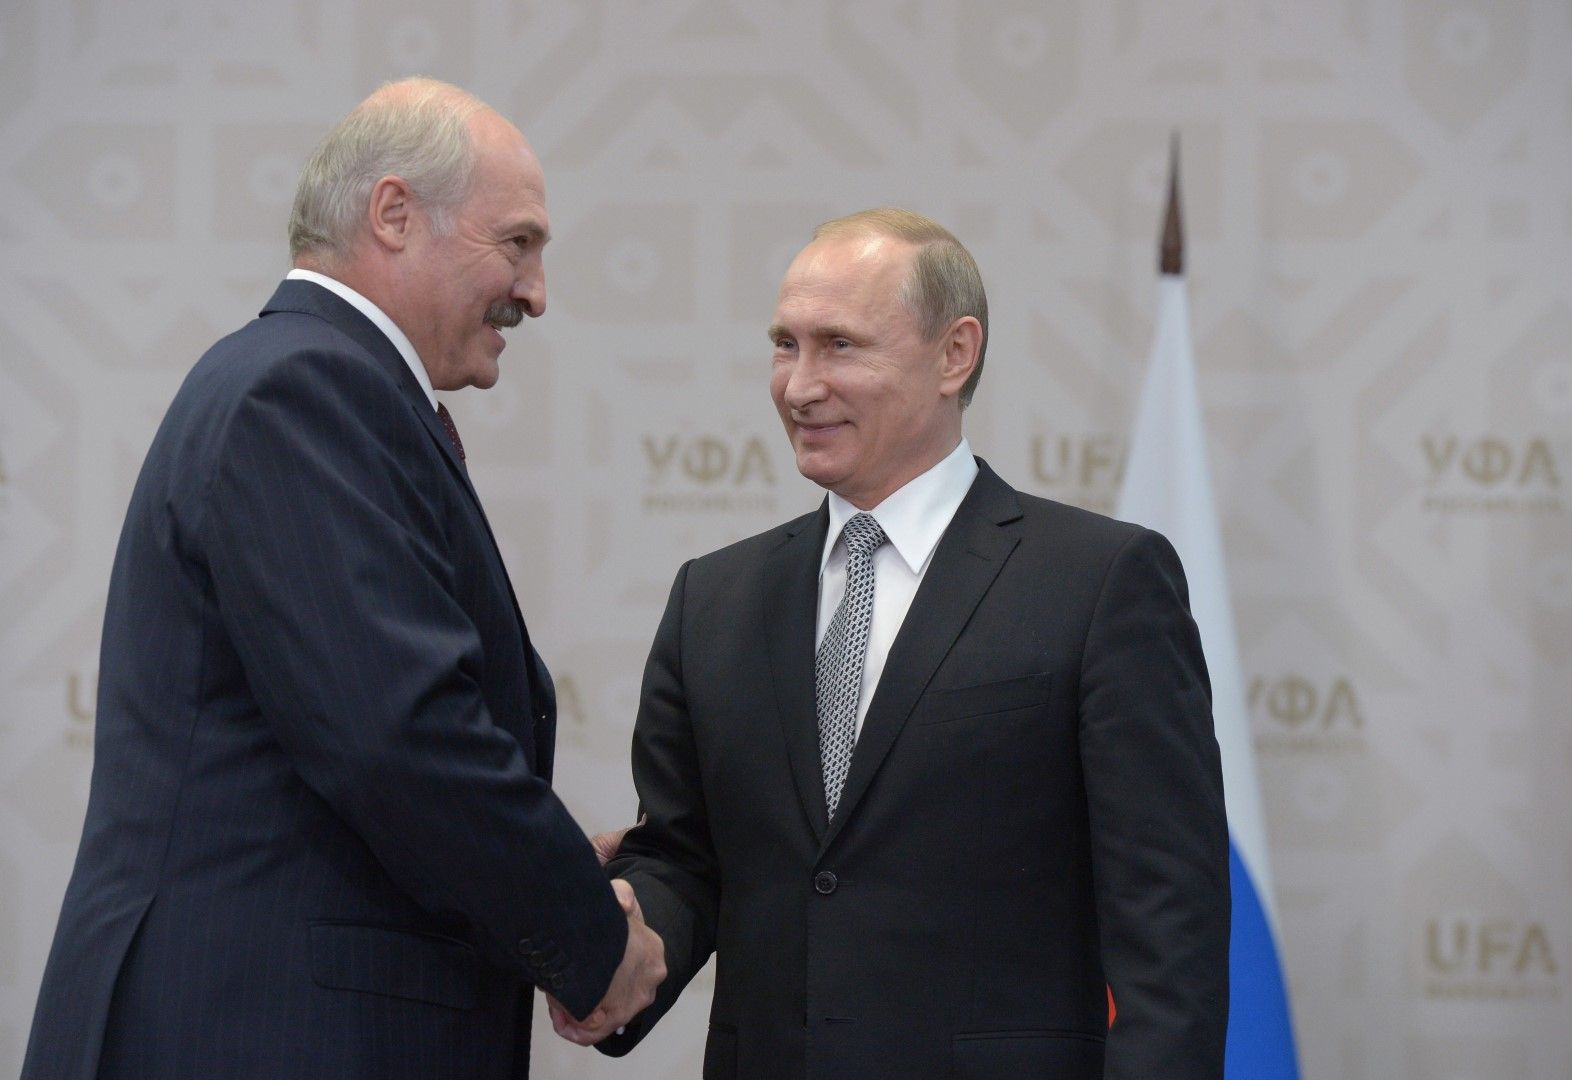 Александър Лукашенко каза, че Владимир Путин е предложил да компенсации за загубите от 300 милиона долара